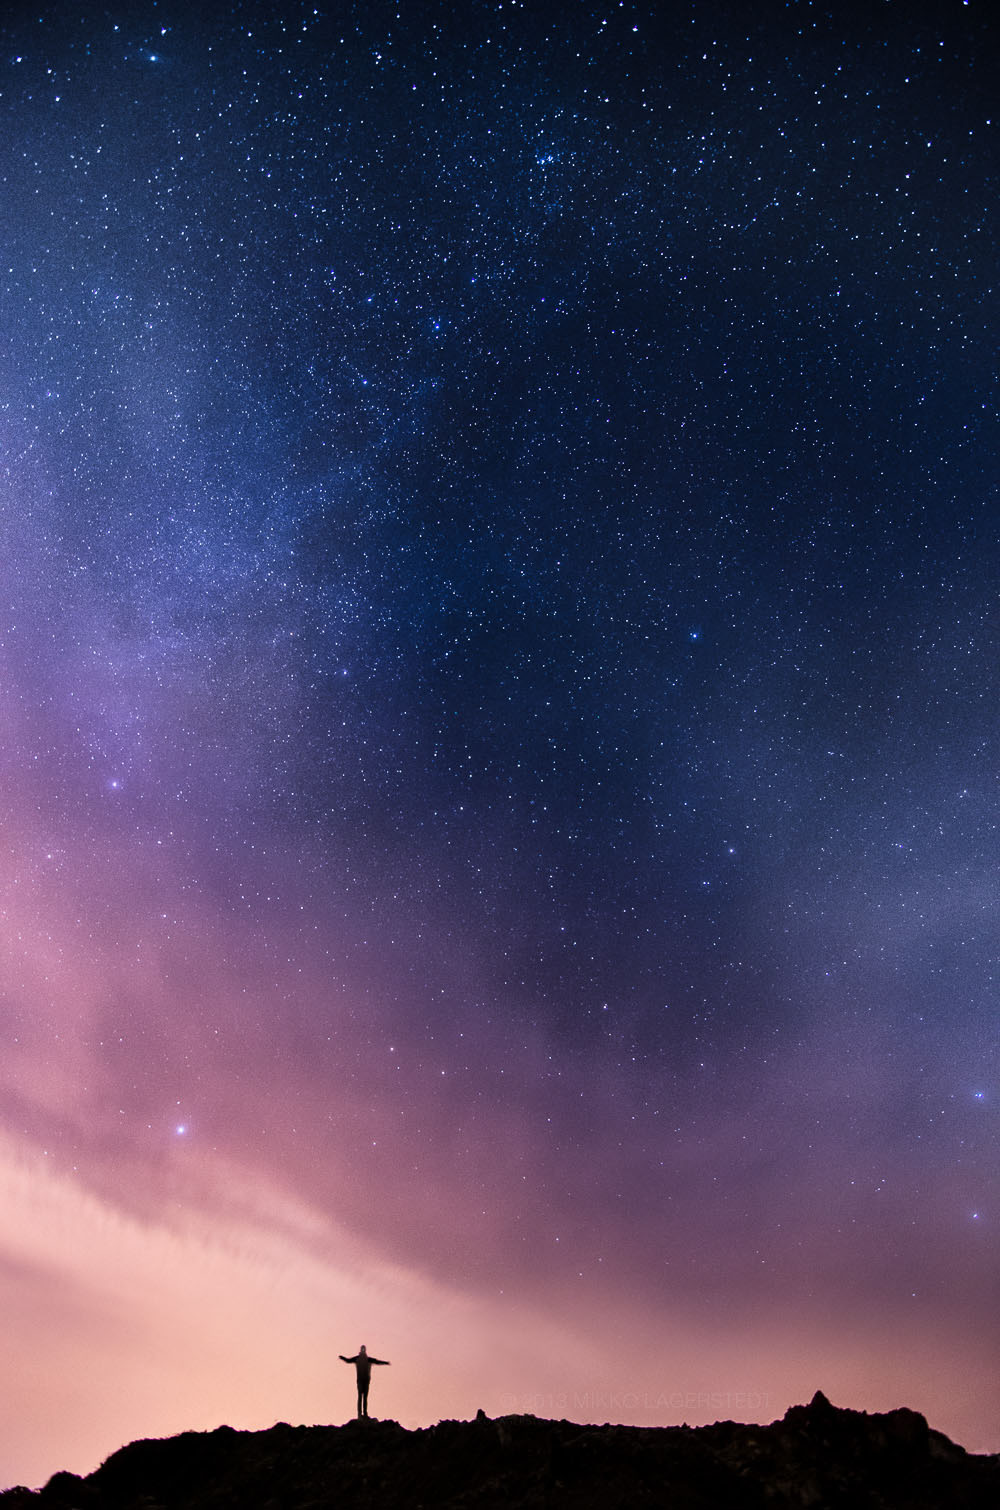 Sky wallpaper - Hình nền bầu trời đẹp - Hình nền máy tính đẹp nhất | Hình  ảnh, Phong cảnh, Bầu trời